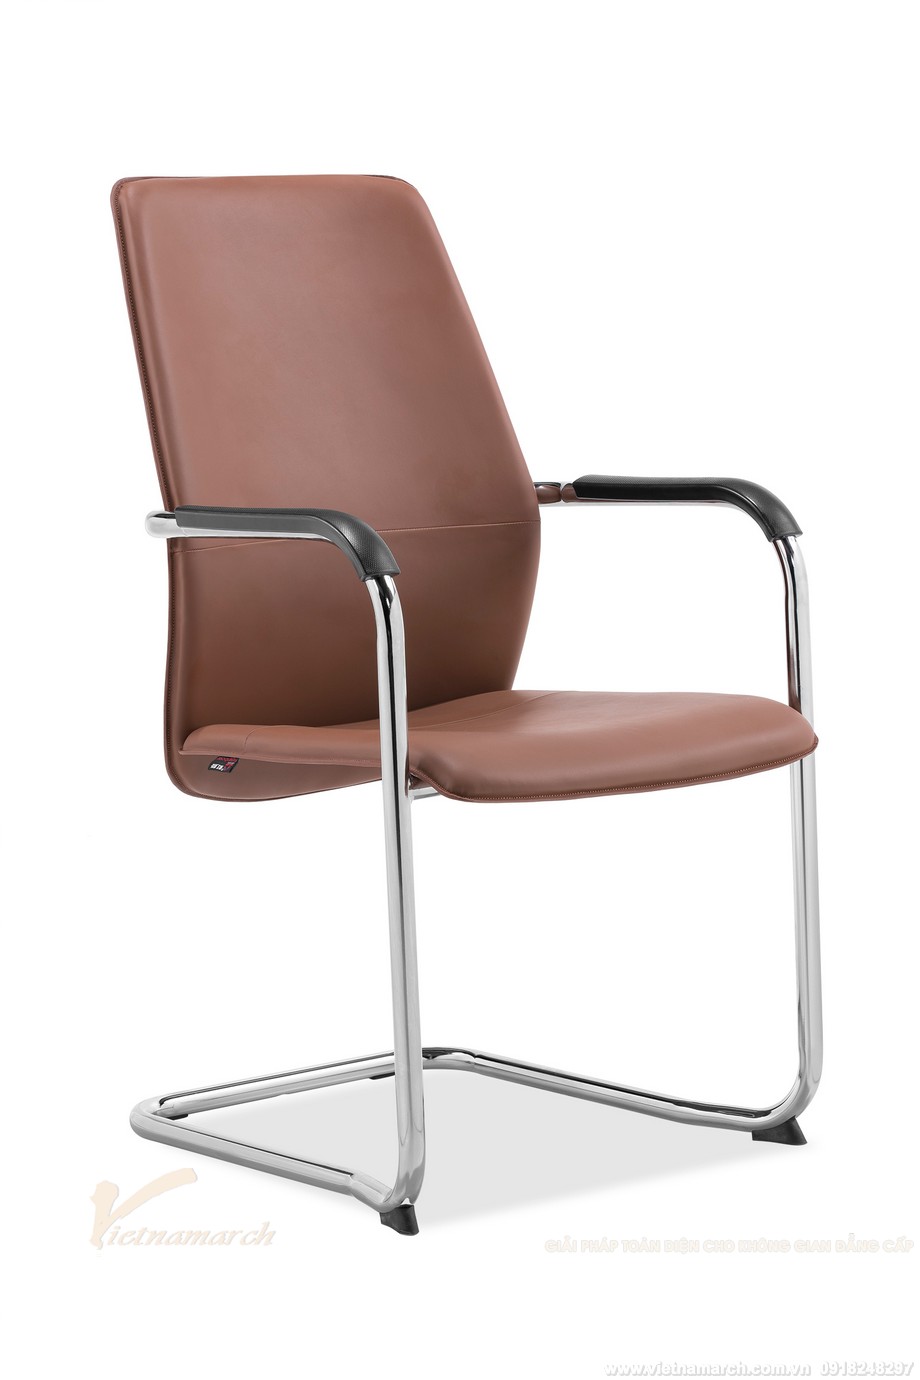 Mẫu ghế văn phòng chân quỳ cho phòng họp đơn giản hiện đại: B252BH > Ghế mầu vàng bò ấn tượng cho văn phòng